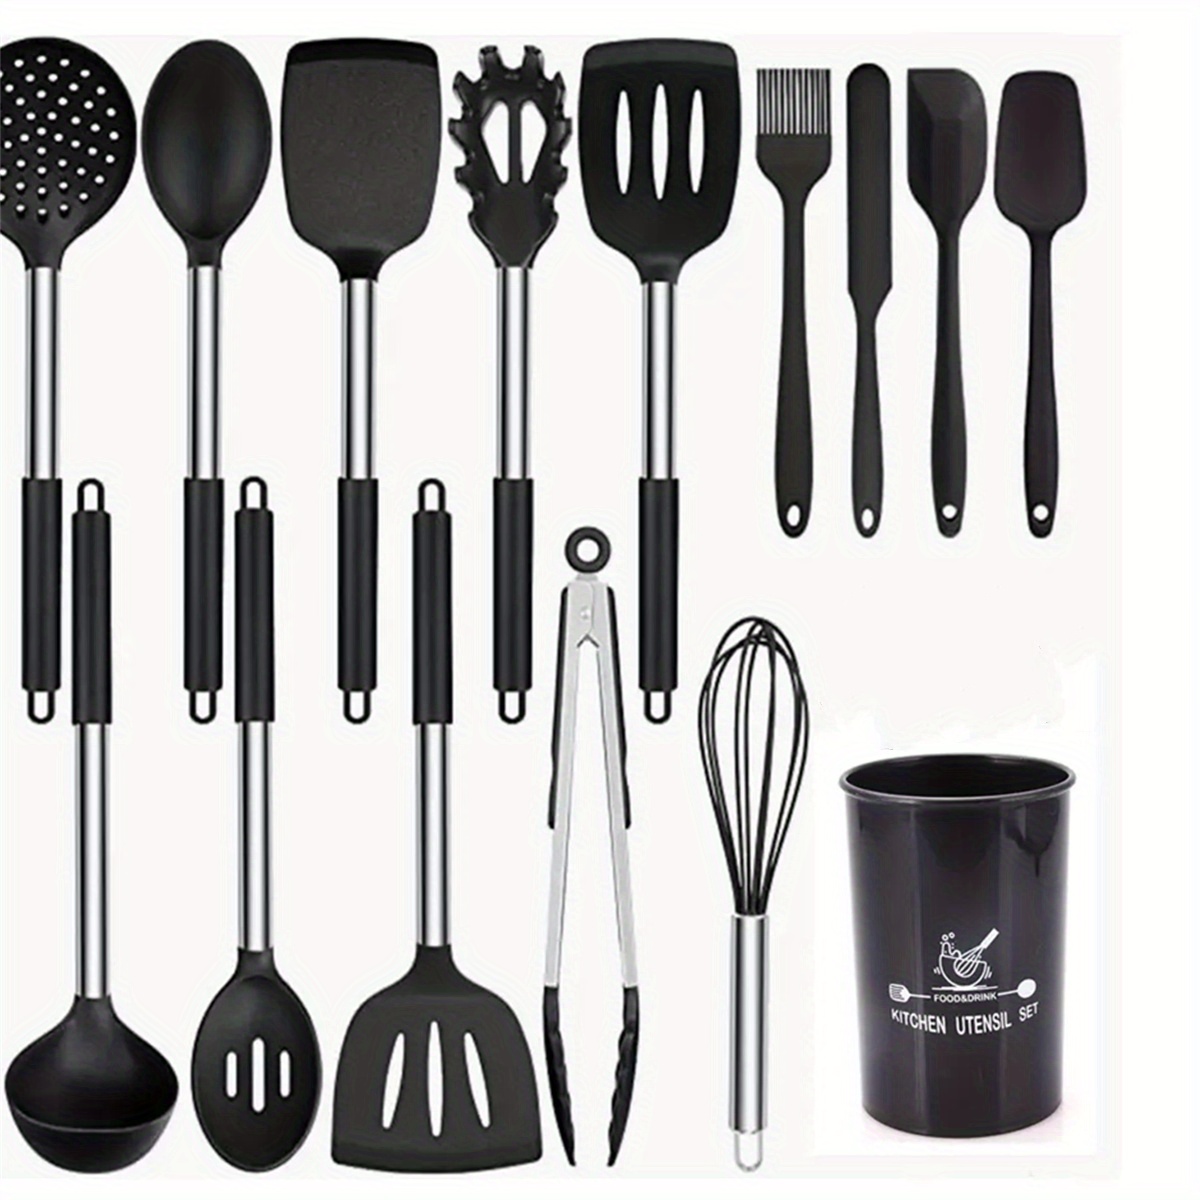 Slotted Spoon, Ladle, Spoon, Spatula & Pasta Server Utensil Set